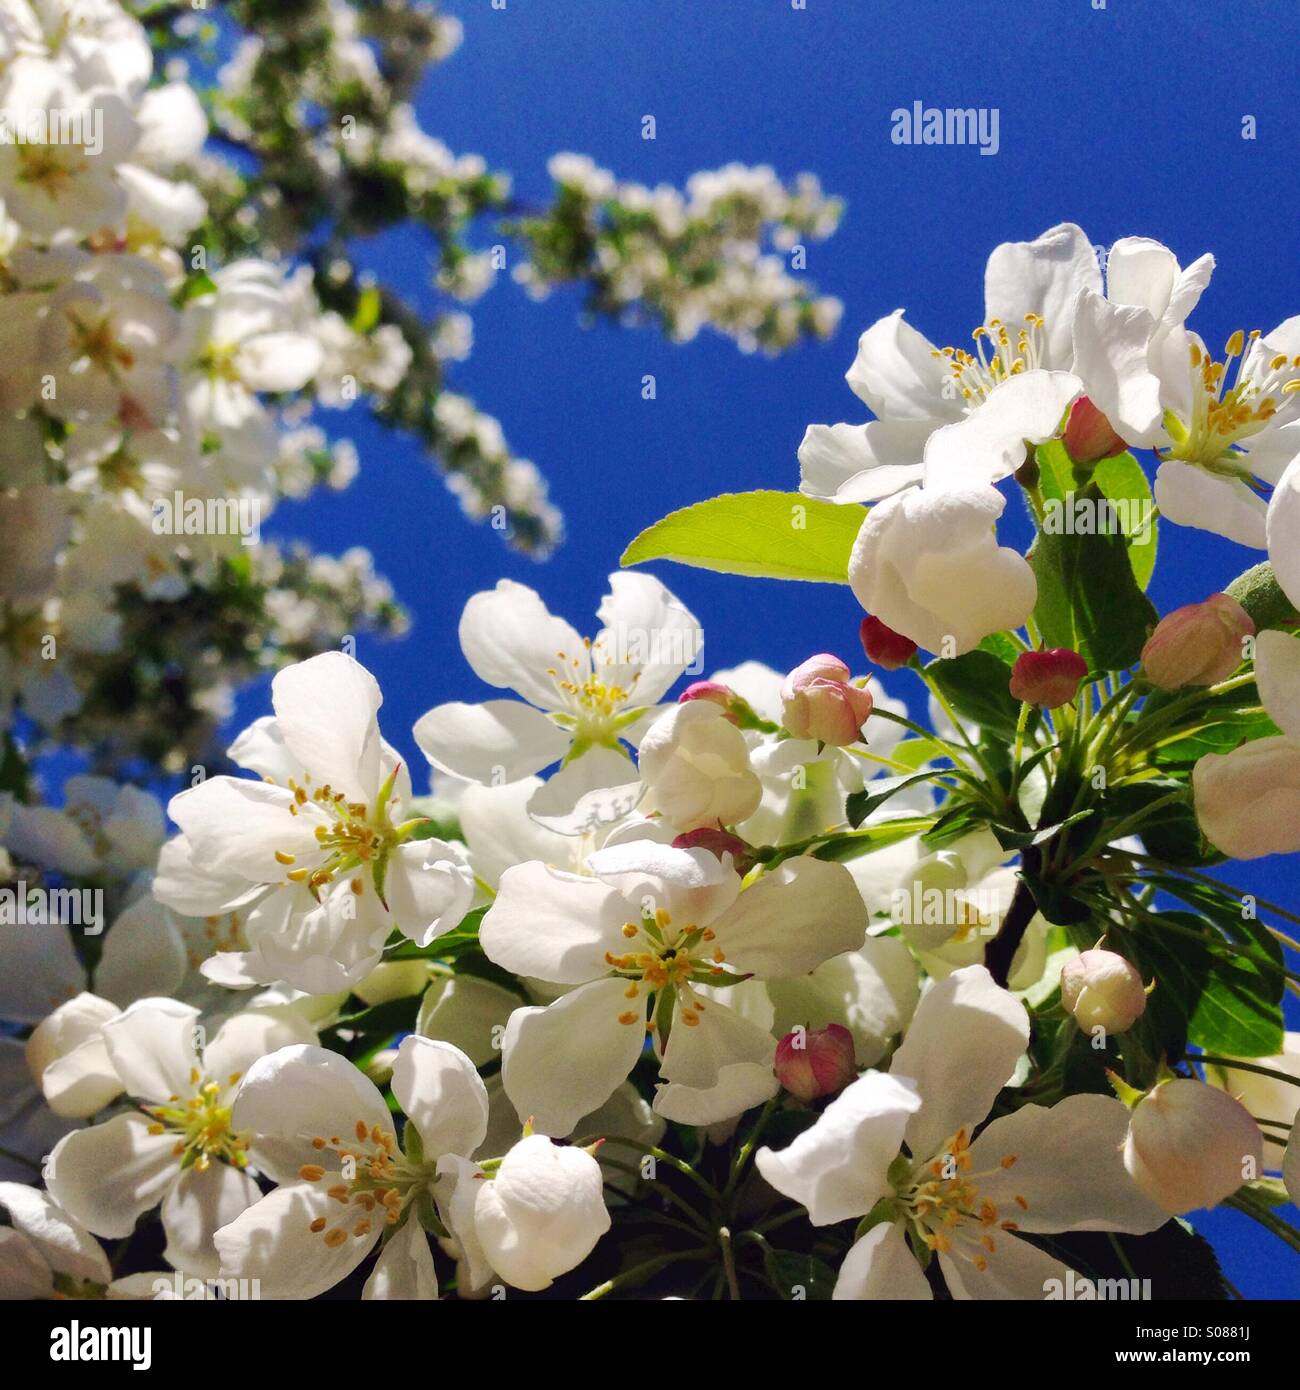 White ornamental cherry blossoms Stock Photo